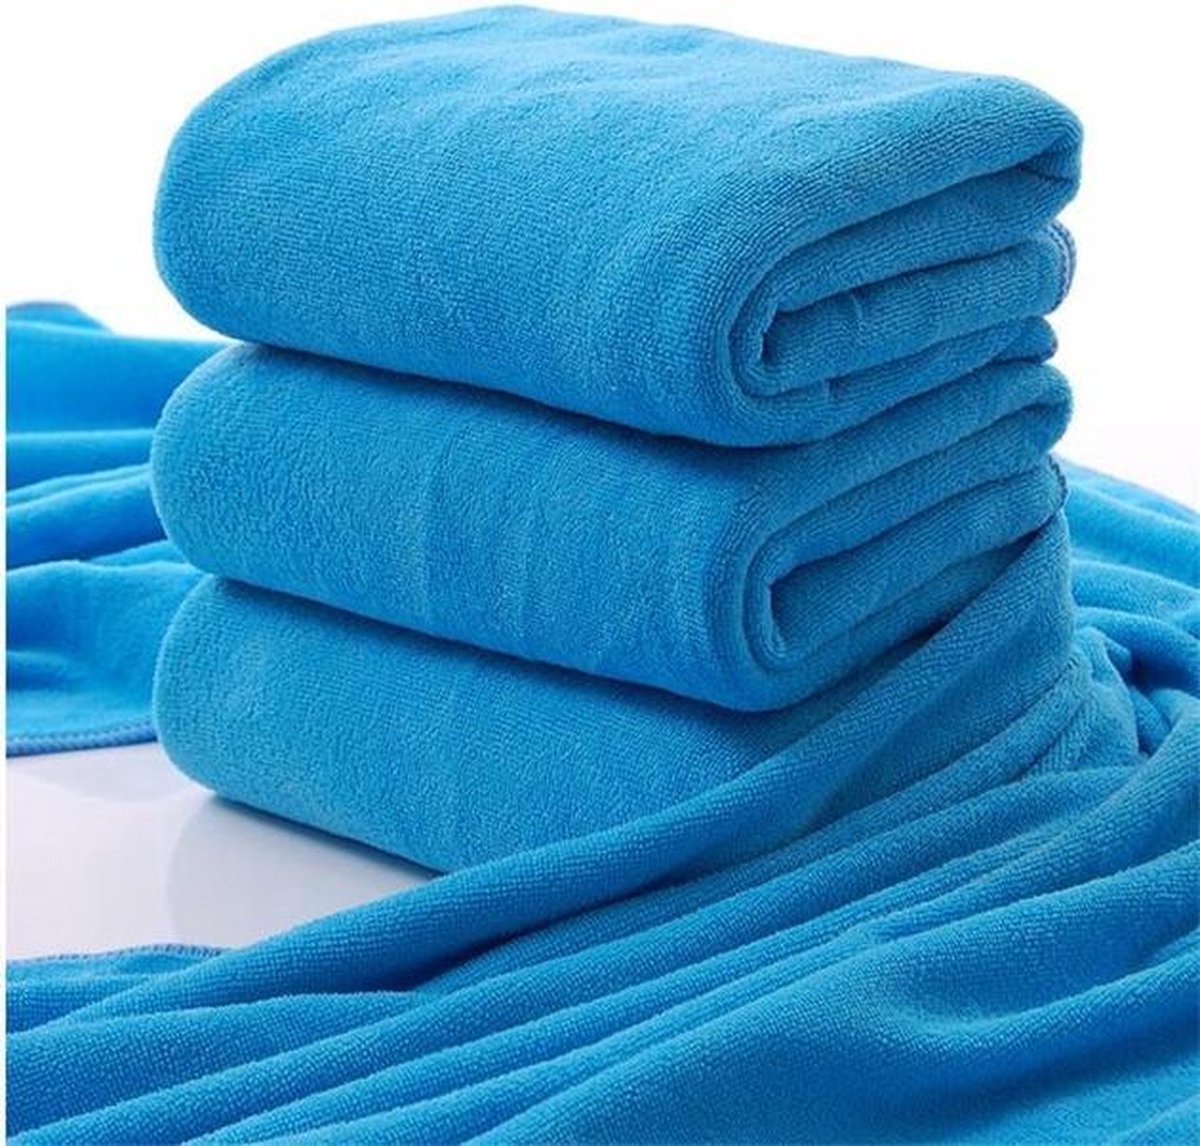 Sneldrogende Microvezel Handdoek / Badhanddoek - Large Microfiber Douche Handdoek - DONKER BLAUW